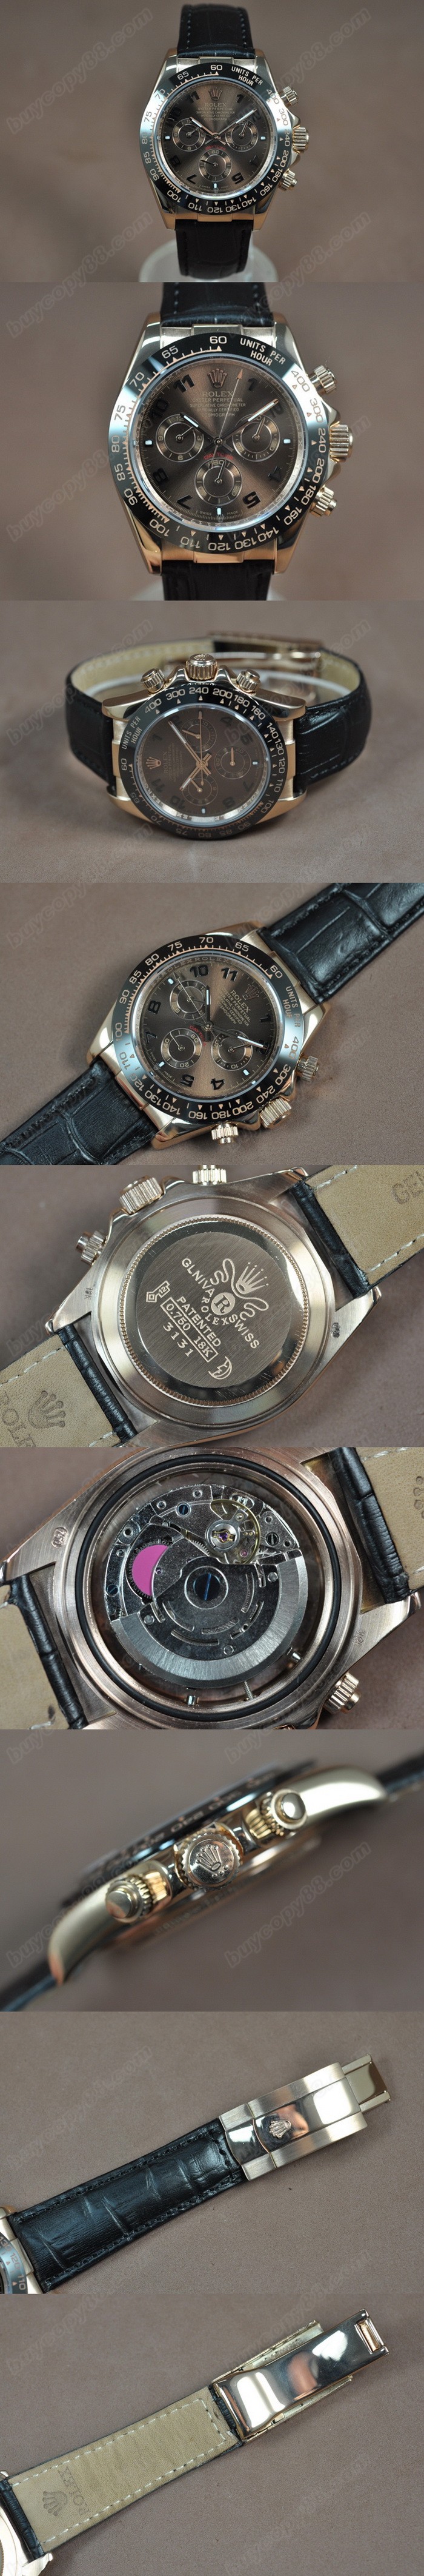 勞力士 Watches Daytona 玫瑰金/LE 陶瓷 Bel 咖啡色 文字盤 Asia 自動機芯 搭 載0